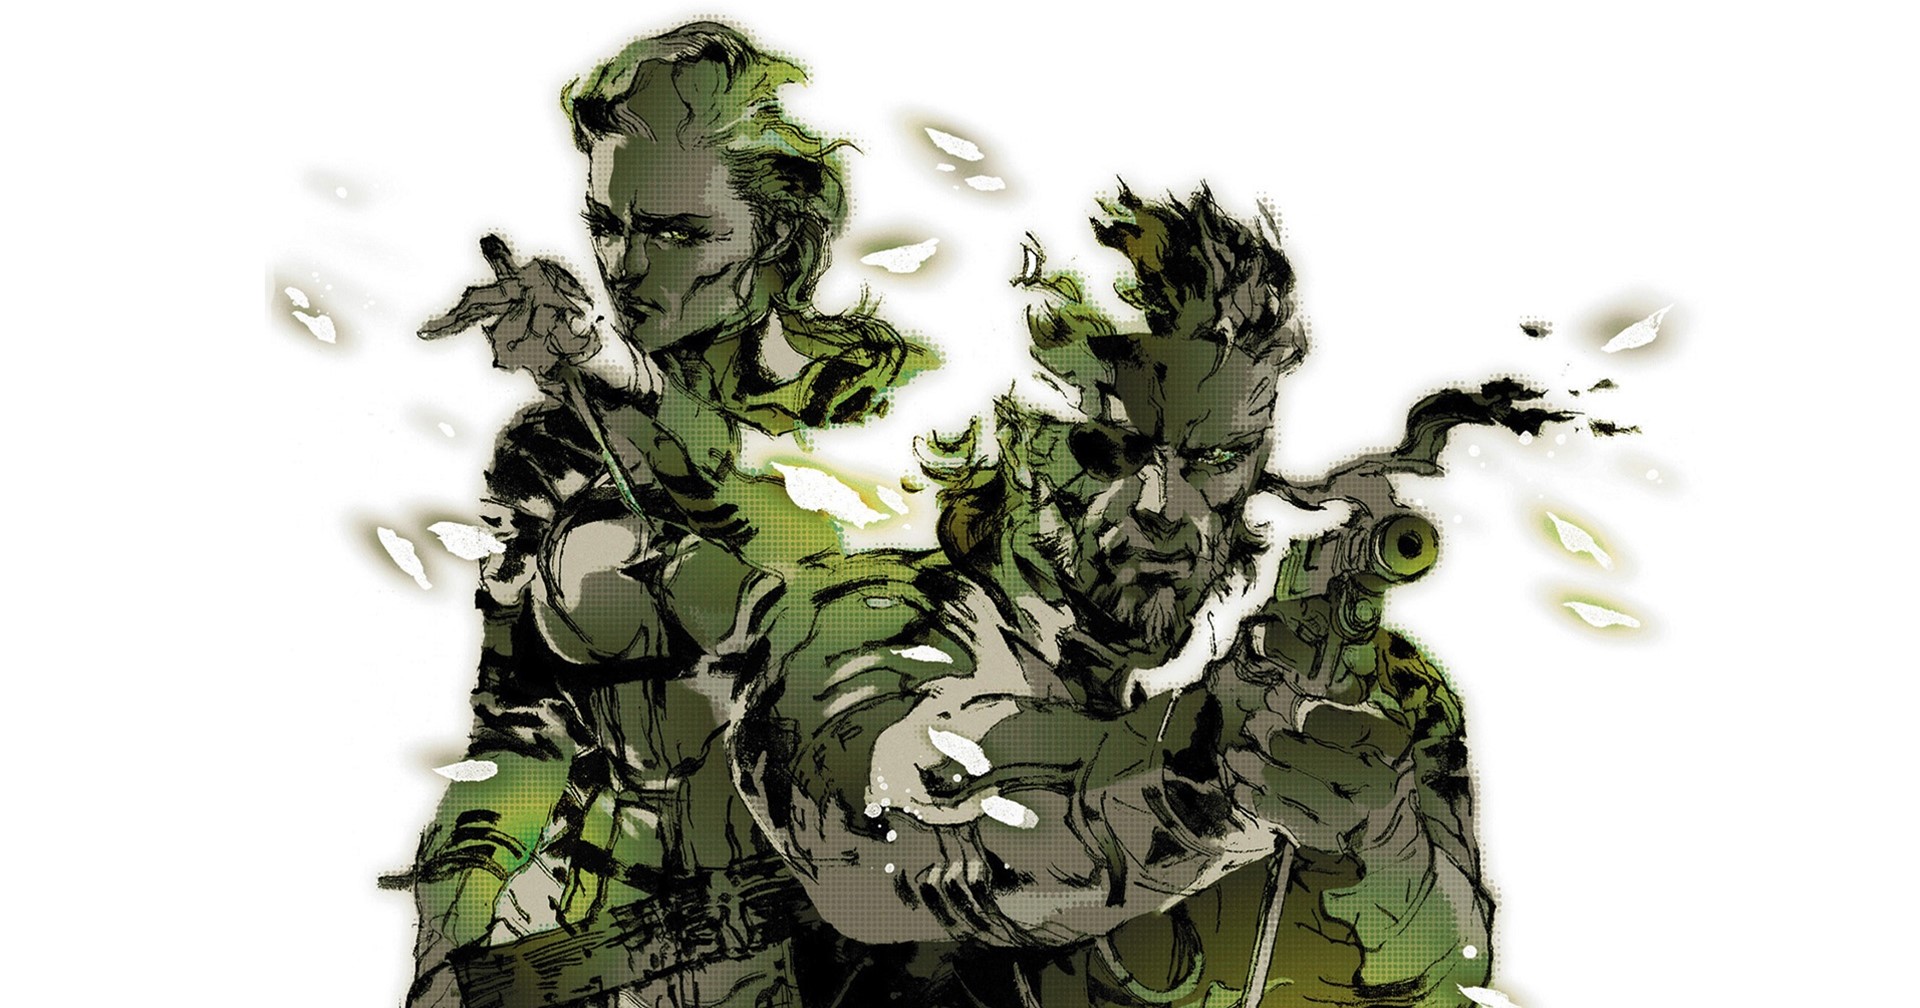 ข่าวลือ เกม Metal Gear Solid 3 Remake จะออกเฉพาะ PS5 และจะเปิดตัวเร็ว ๆ นี้